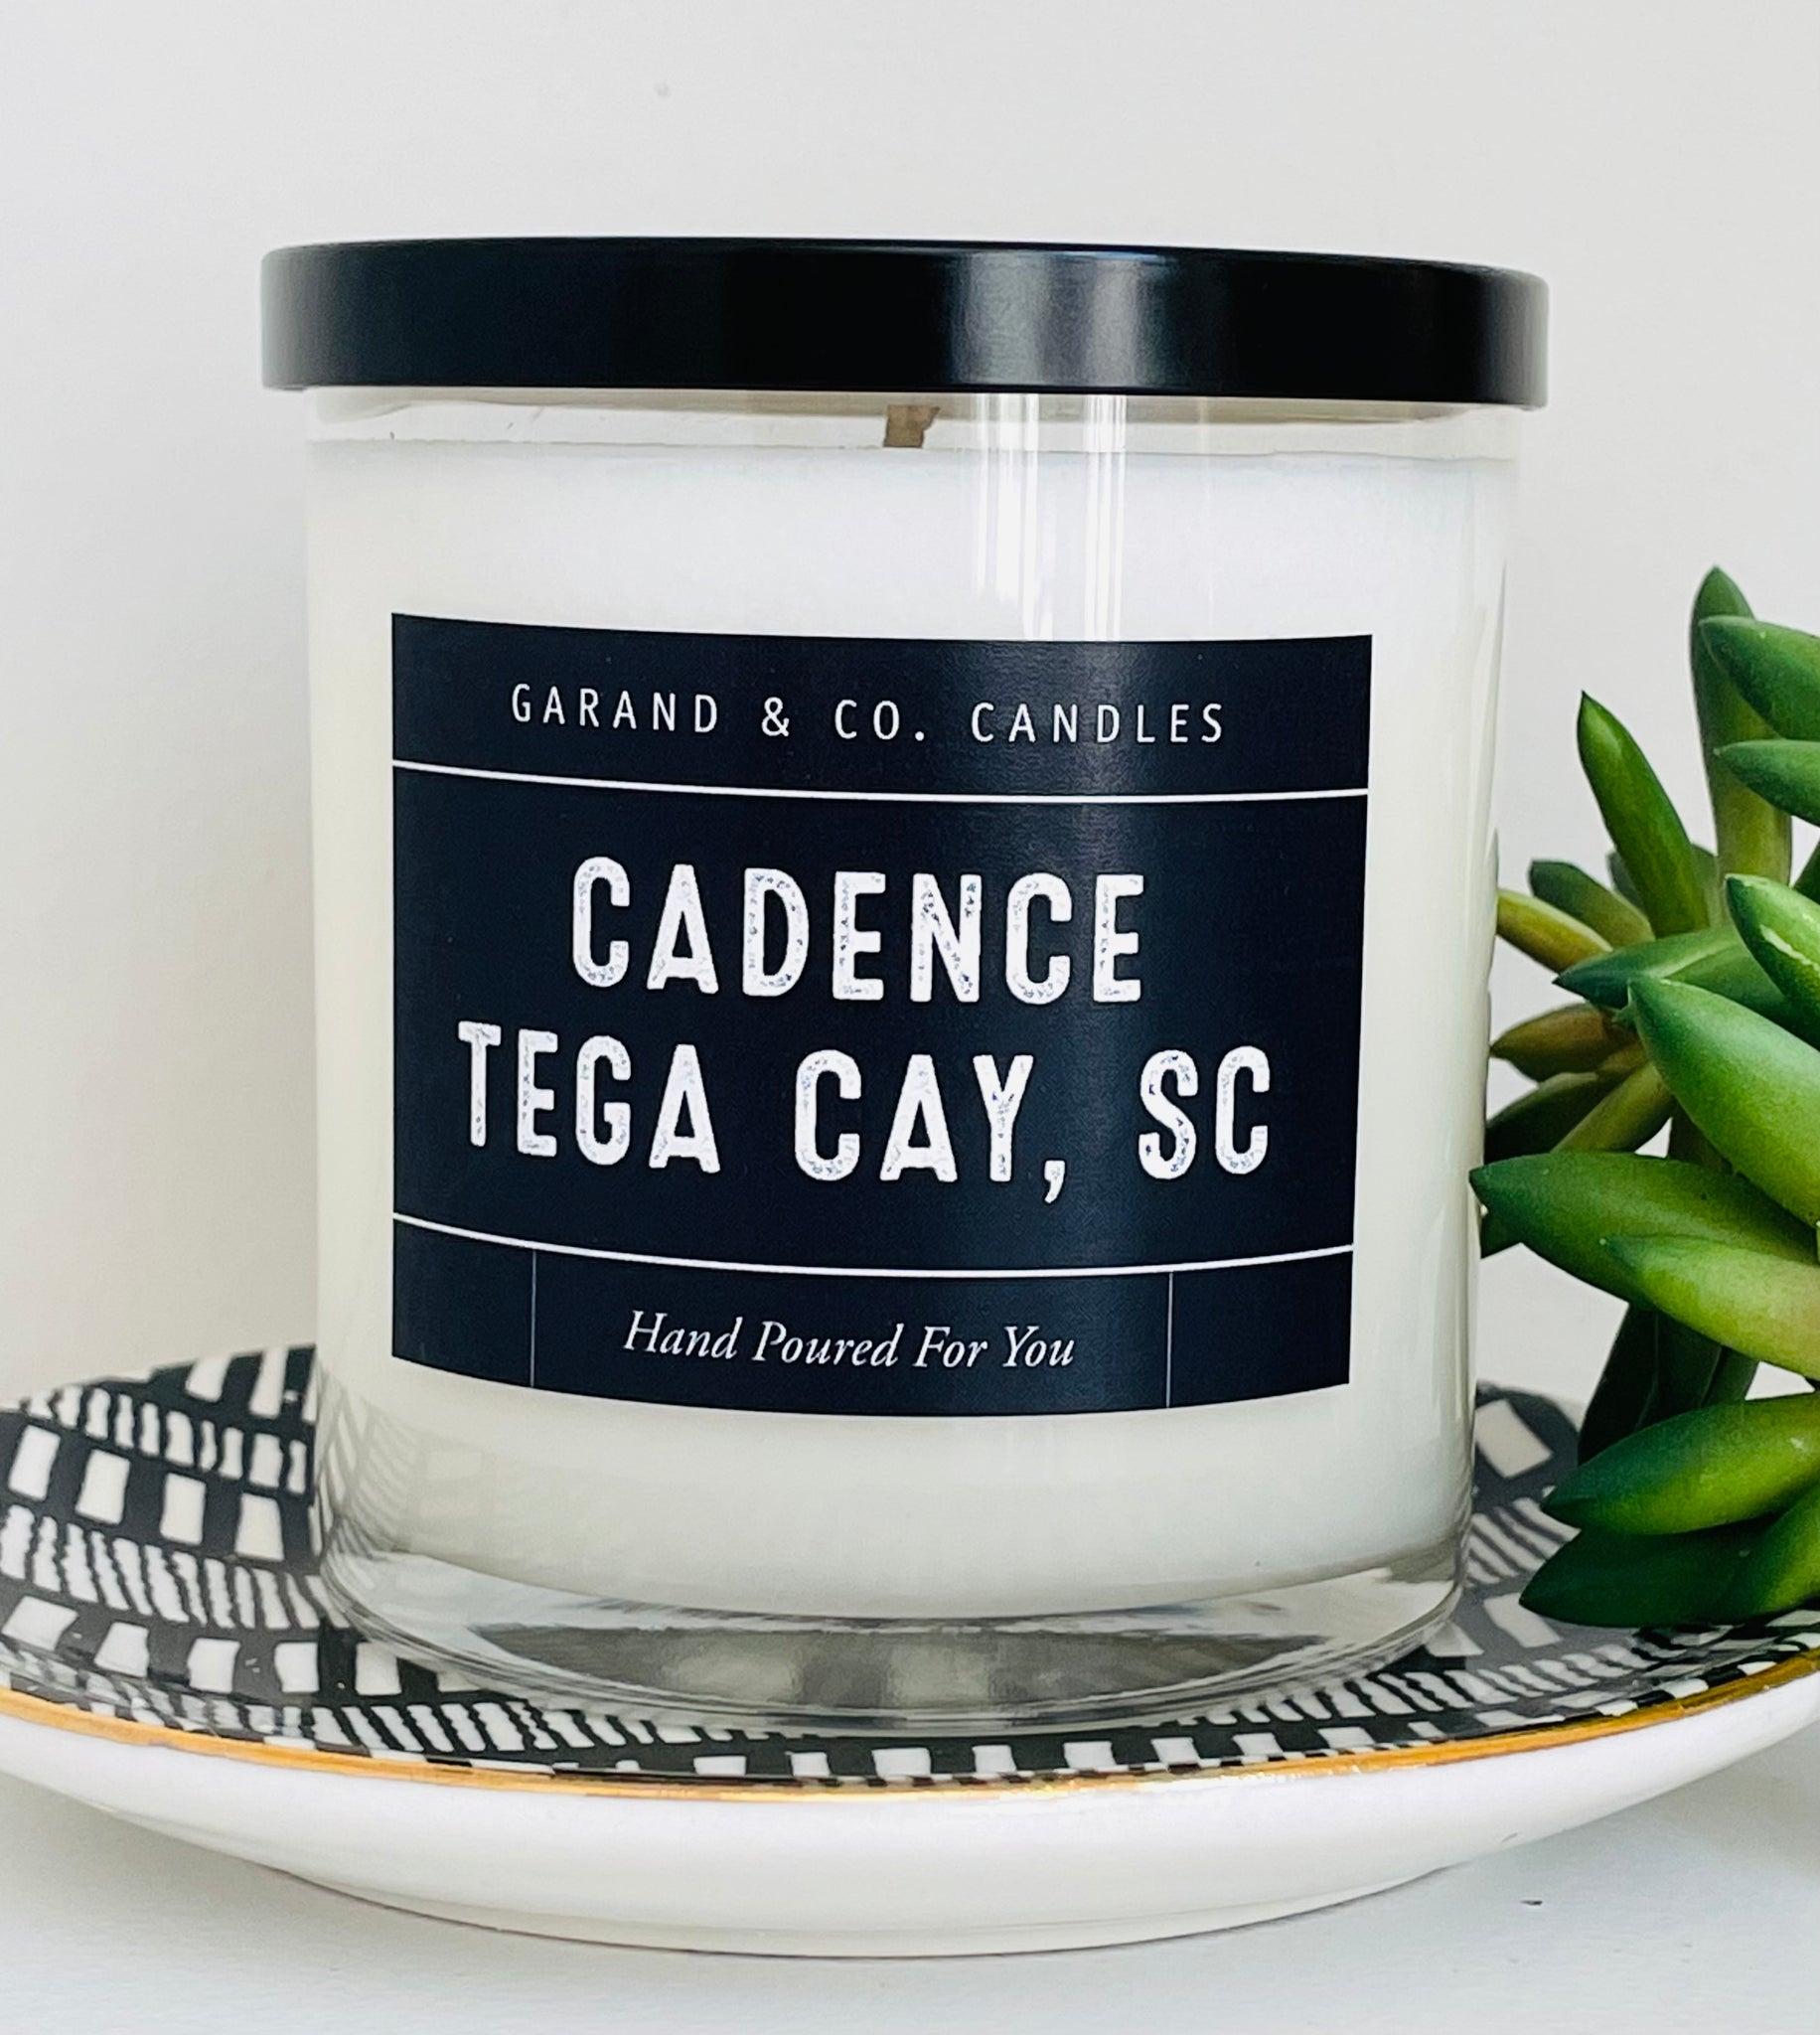 12 oz Clear Glass Jar Candle - Cadence - Tega Cay, SC